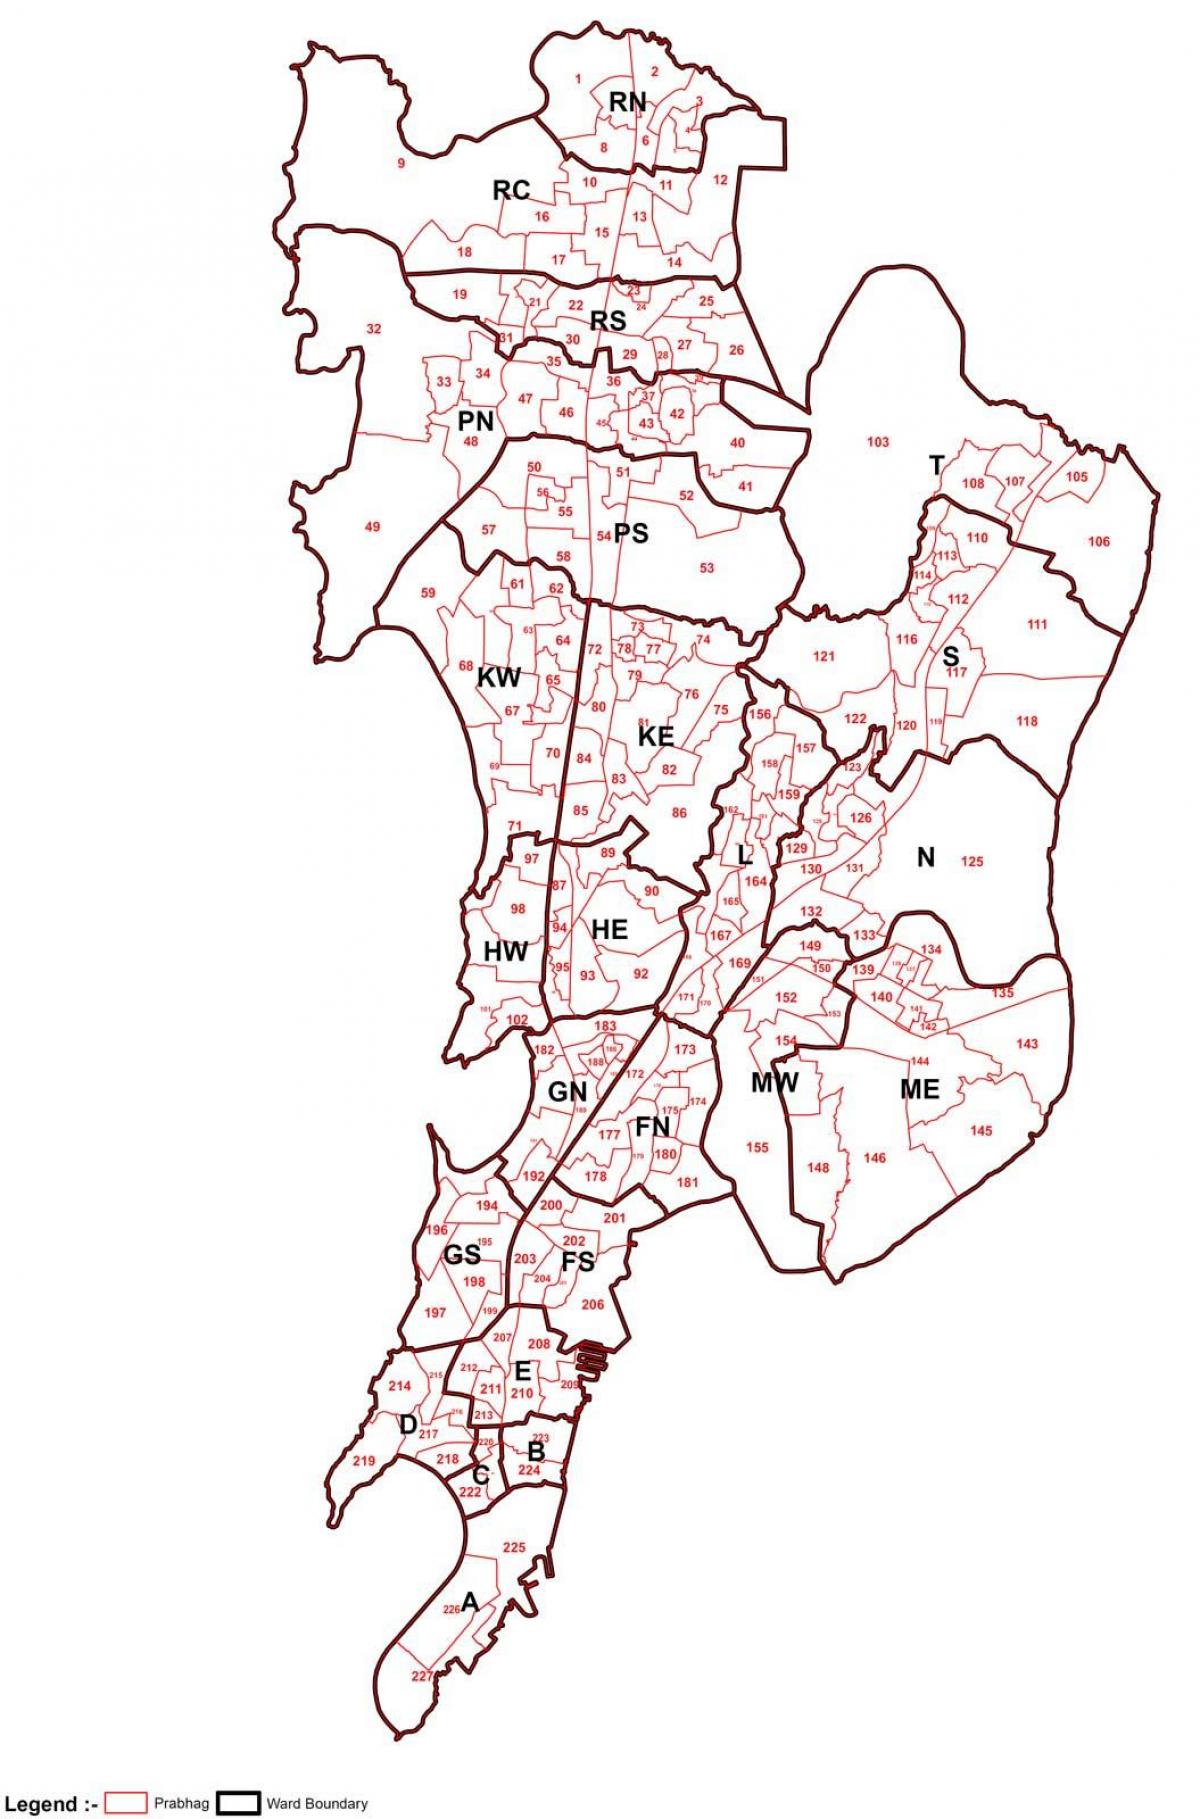 Mumbajus žemėlapio plotas protingas